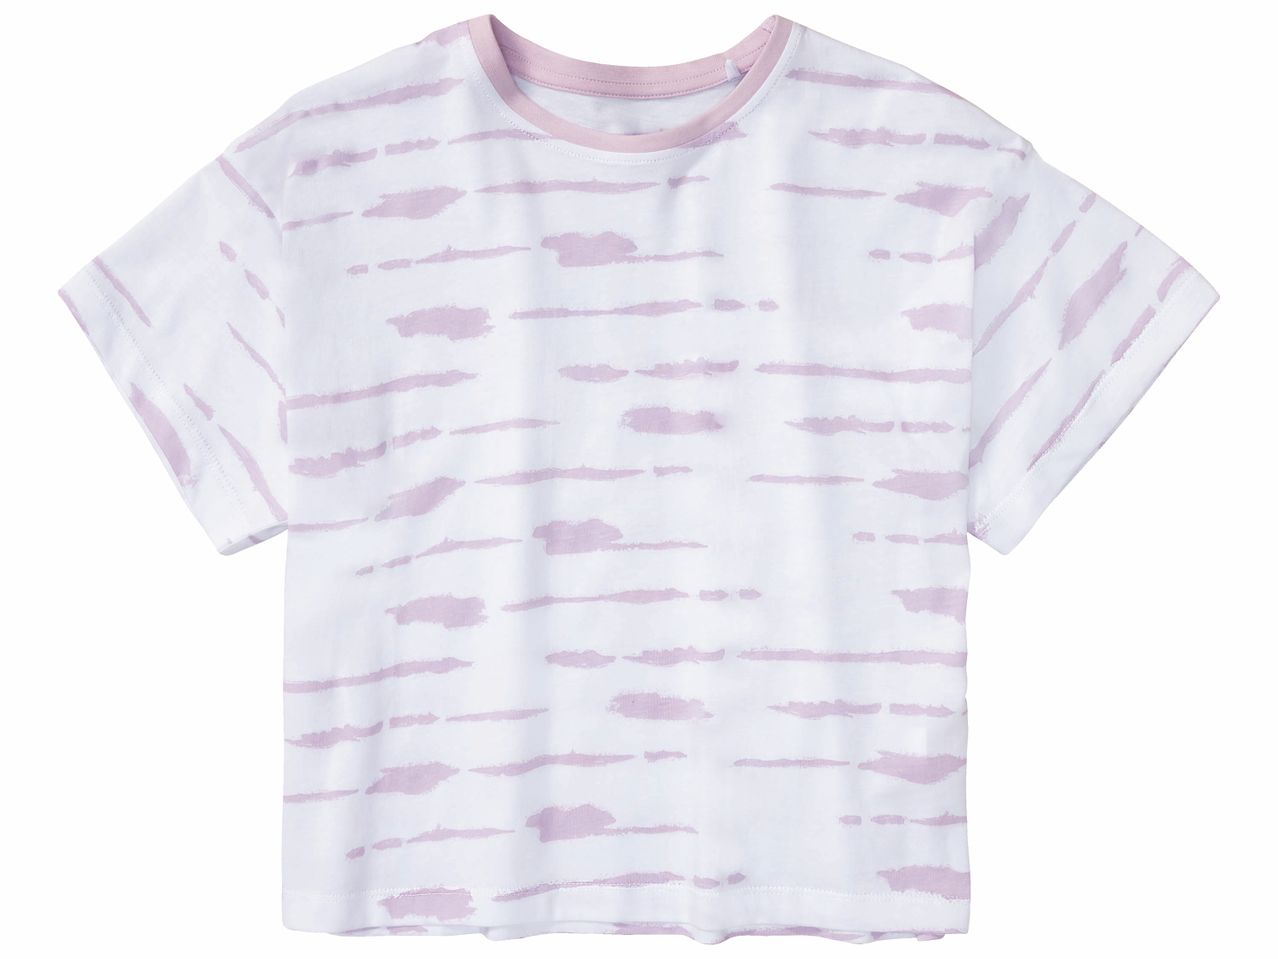 T-shirts fille , prezzo 5.99 EUR 
T-shirts fille 
- Du 8-10 ans (134/140 cm) au ...